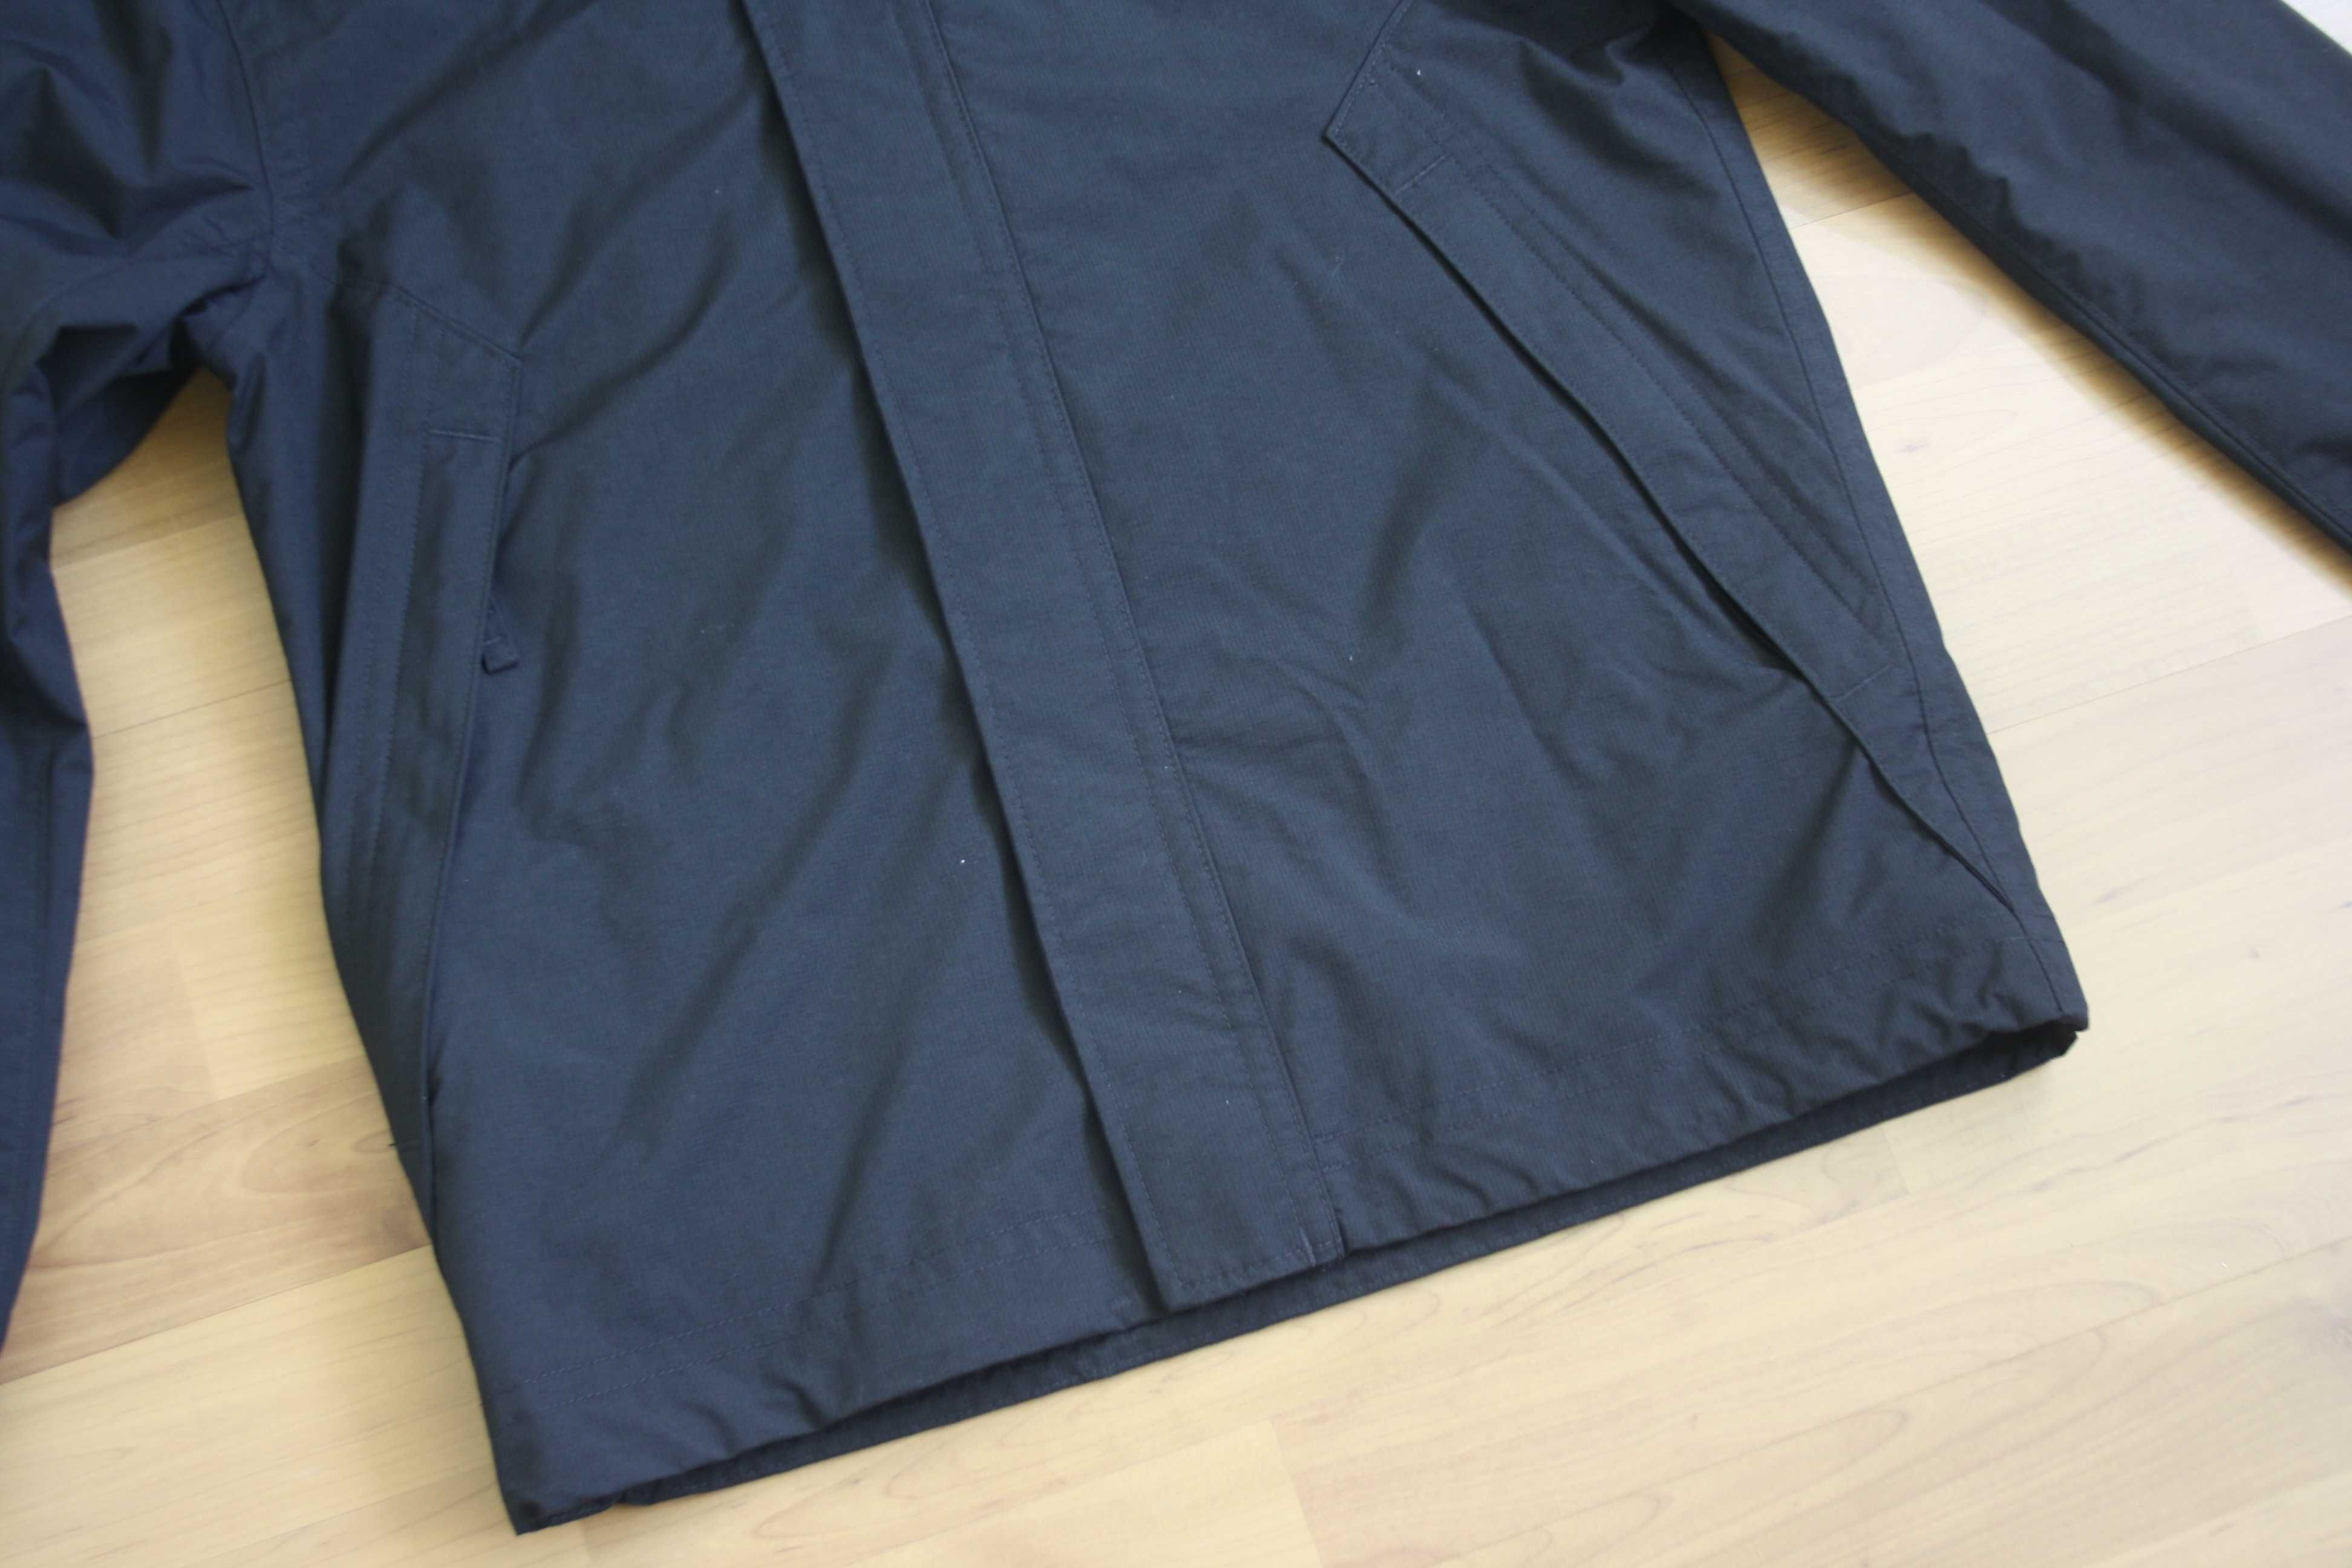 Куртка Timberland Waterproof нейлон  розмір S оригінал